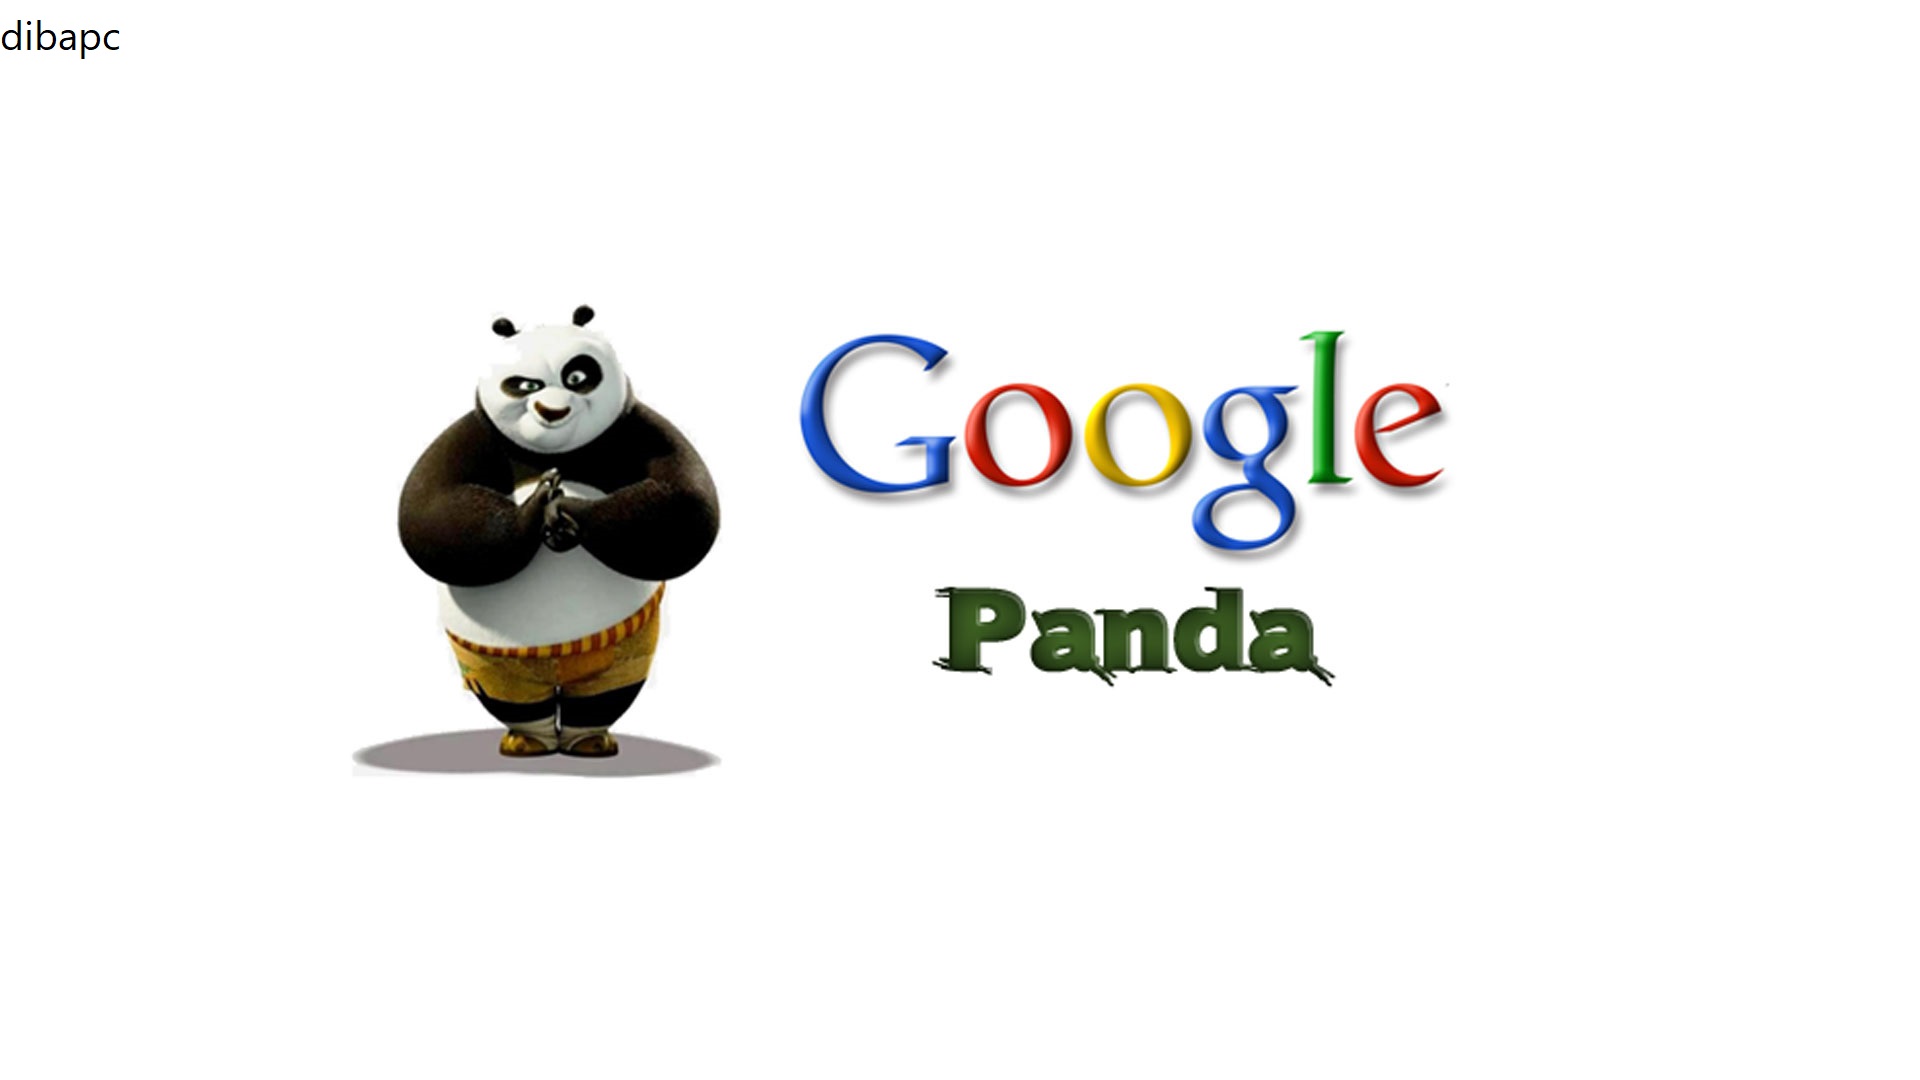 تأثیر الگوریتم پاندا گوگل (Panda Algorithm) در بهبود تجربه کاربری و سئو سایت